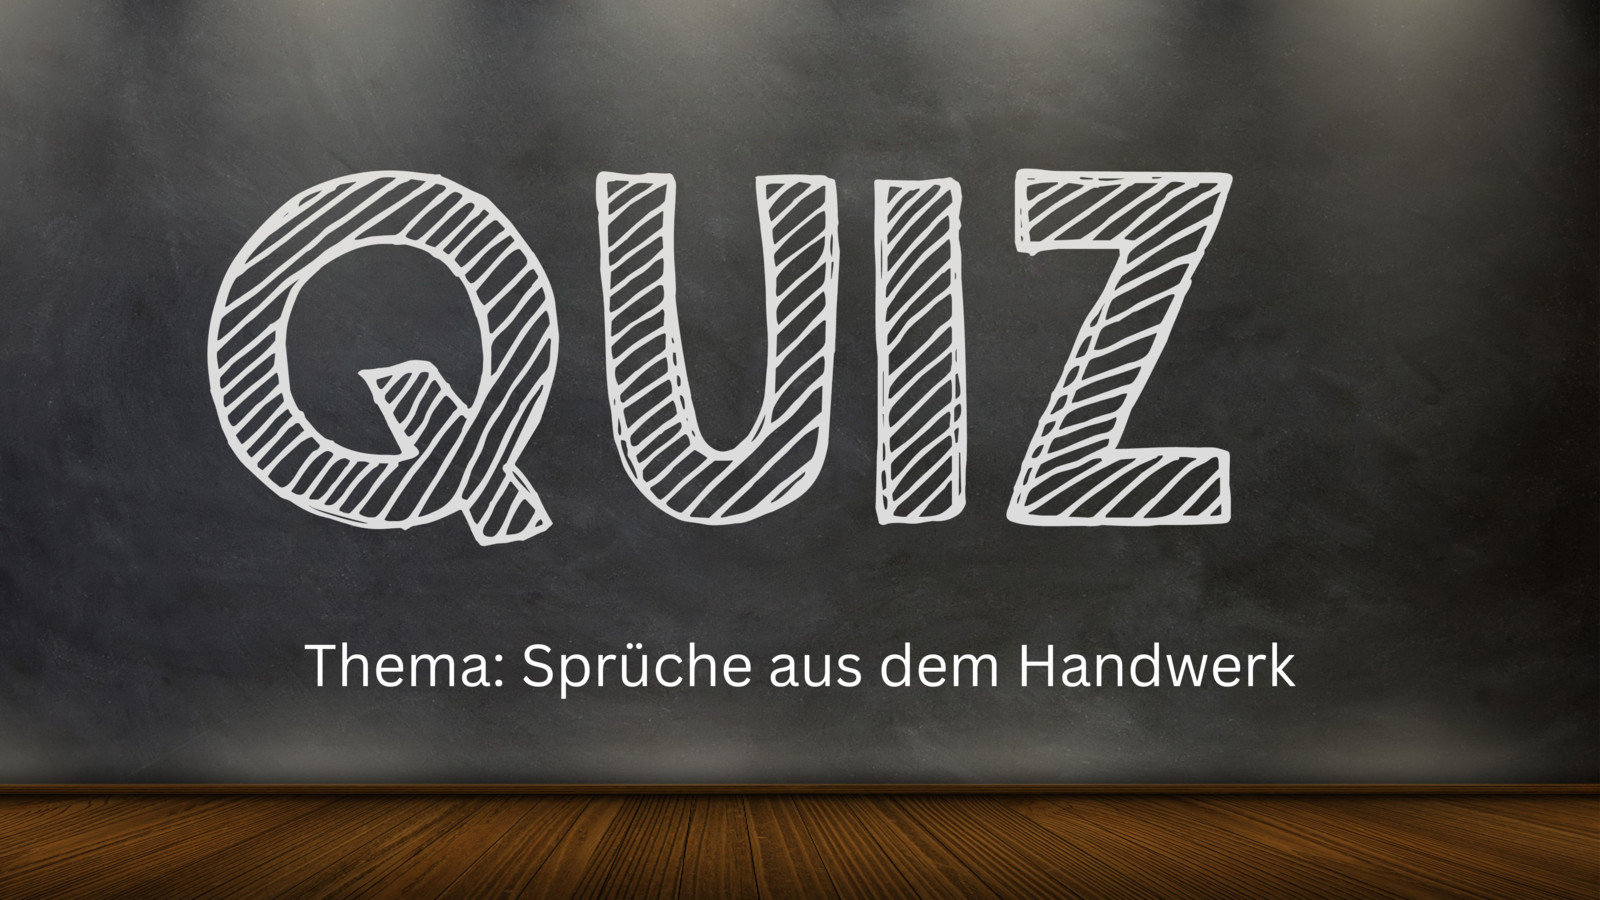 Testen Sie beim schnellen 3x3-Quiz, wie gut Sie Handwerksredensarten und ihre Bedeutung kennen!